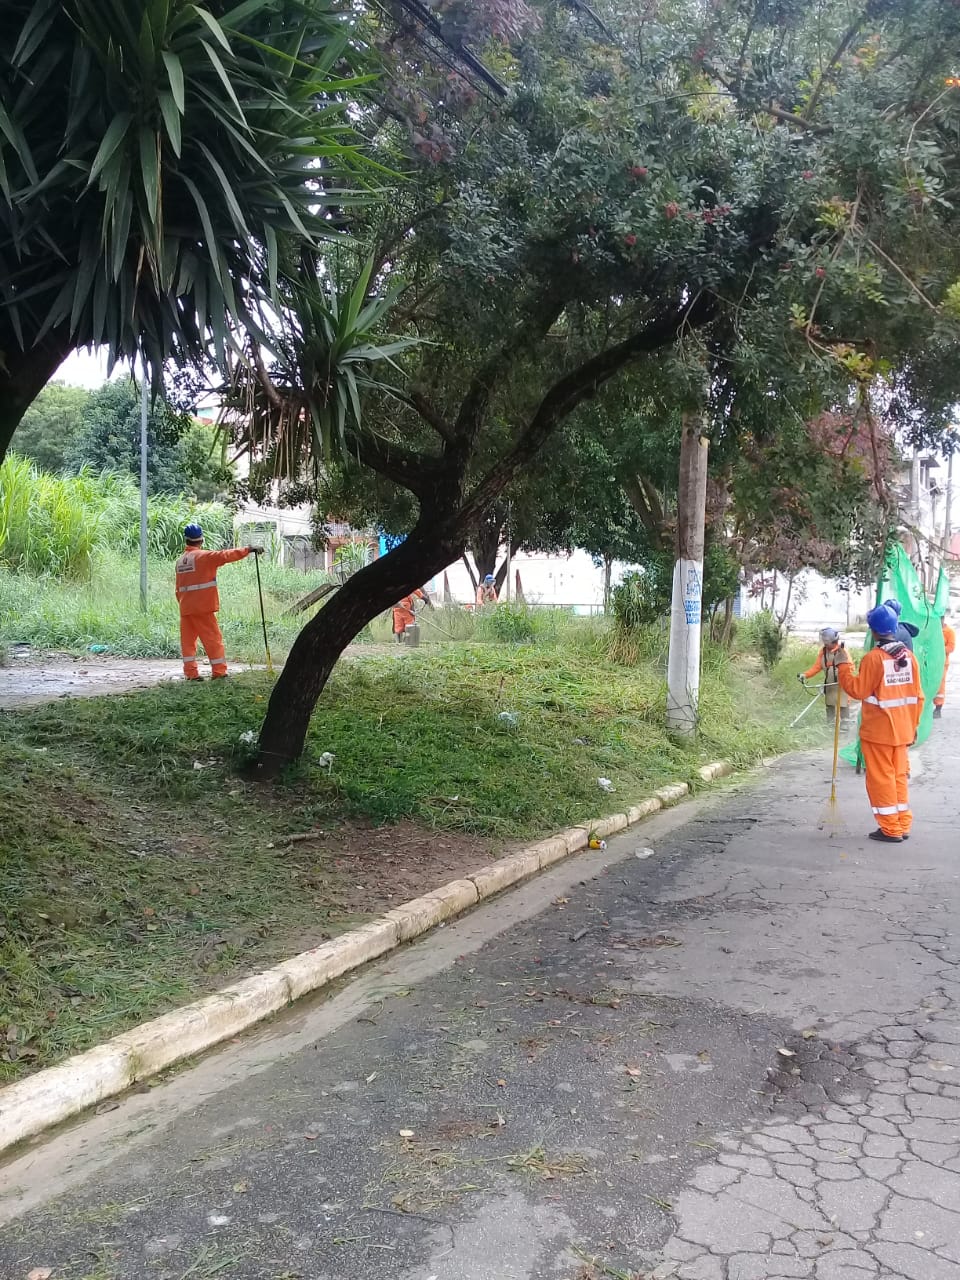 Seis trabalhadores uniformizados de macacão laranja limpam a faixa de grama à esquerda da rua. Usam uma tela verde de proteção, enquanto um faz a roçagem, na beira da guia. Dois estão com rastelos. Outro que trabalha com a roçadeira, só é visto parcialmente. Seu rosto está escondido pelo galho de uma árvore.